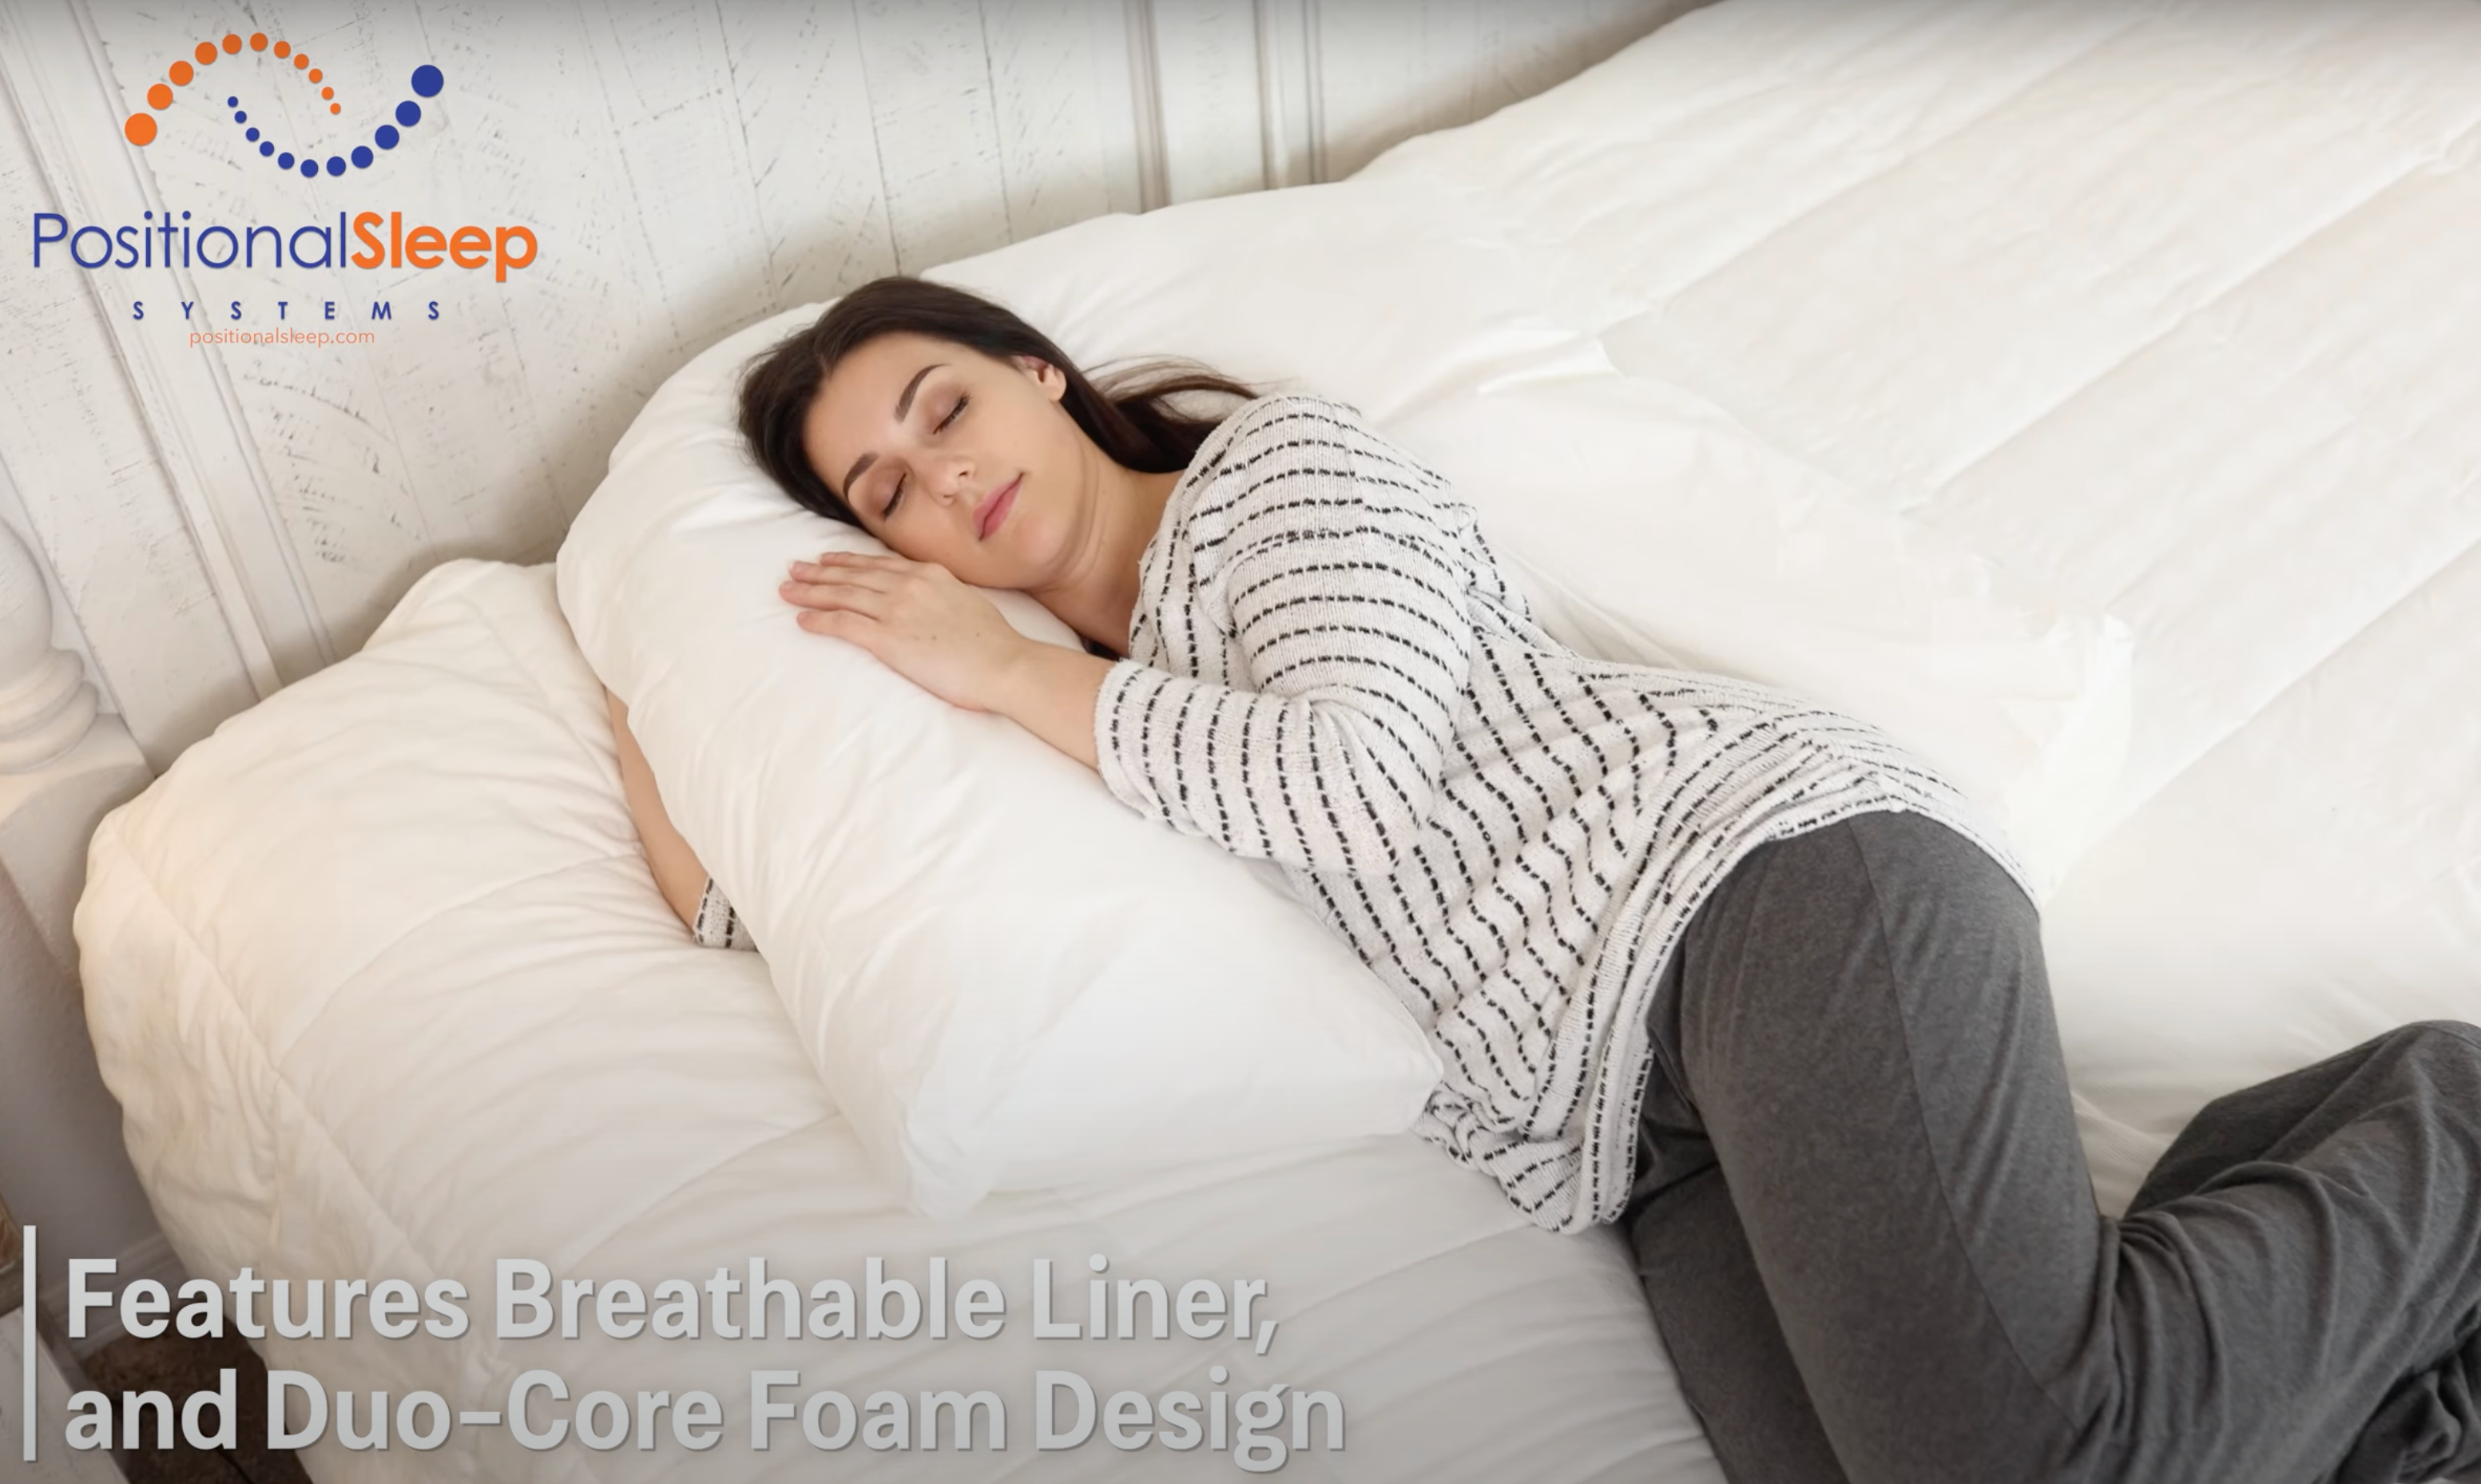 Orthopedic Hybrid Sleep Support Cushion Plus Free Shipping